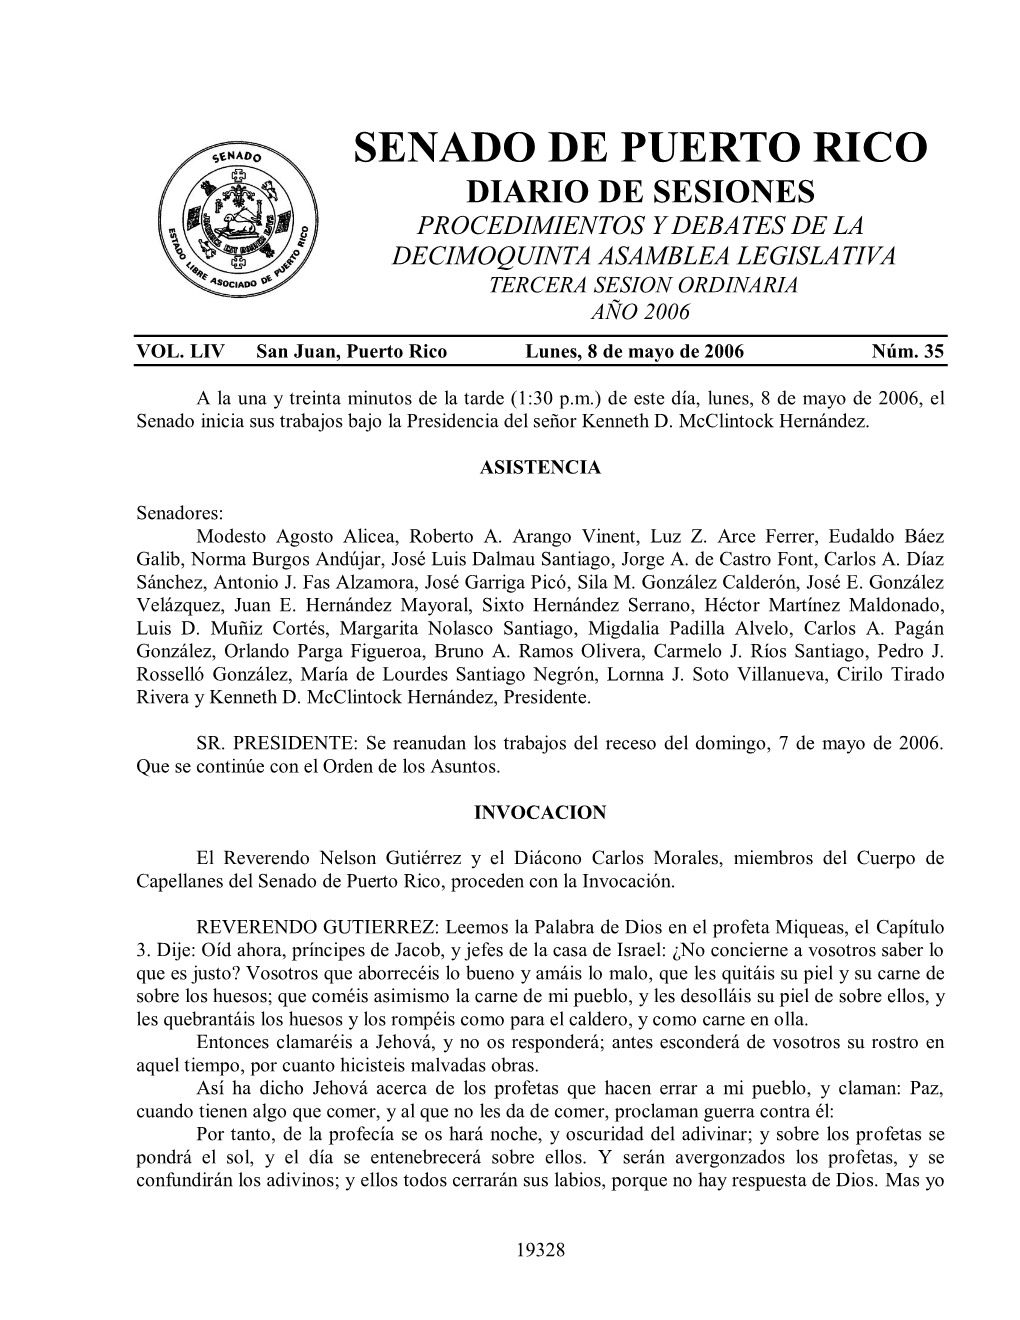 Senado De Puerto Rico Diario De Sesiones Procedimientos Y Debates De La Decimoquinta Asamblea Legislativa Tercera Sesion Ordinaria Año 2006 Vol